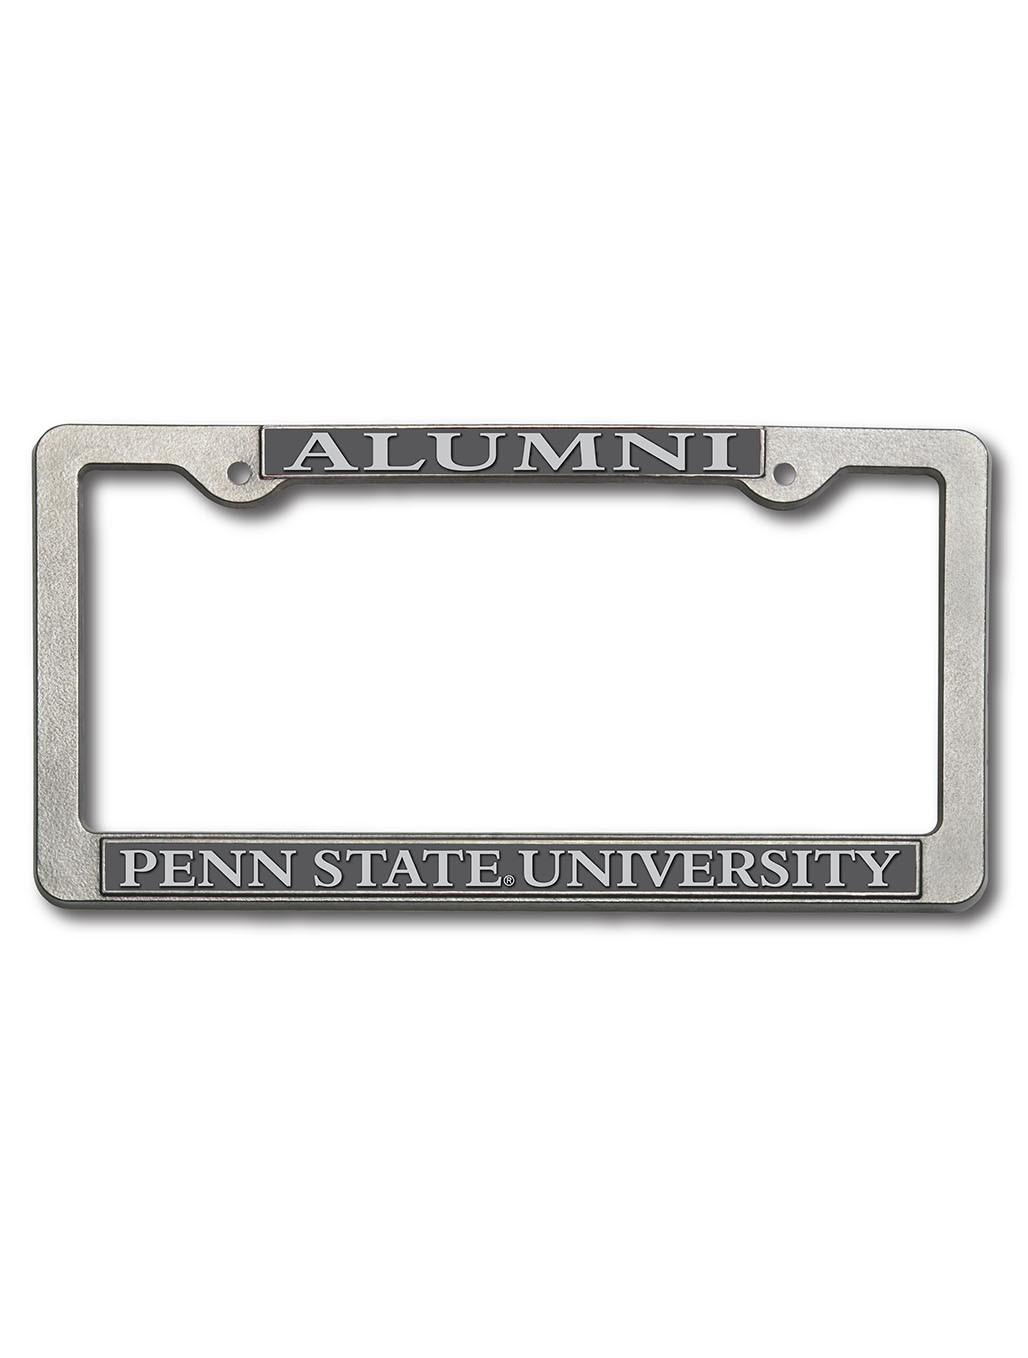 Penn State Alumni License Plate Frame